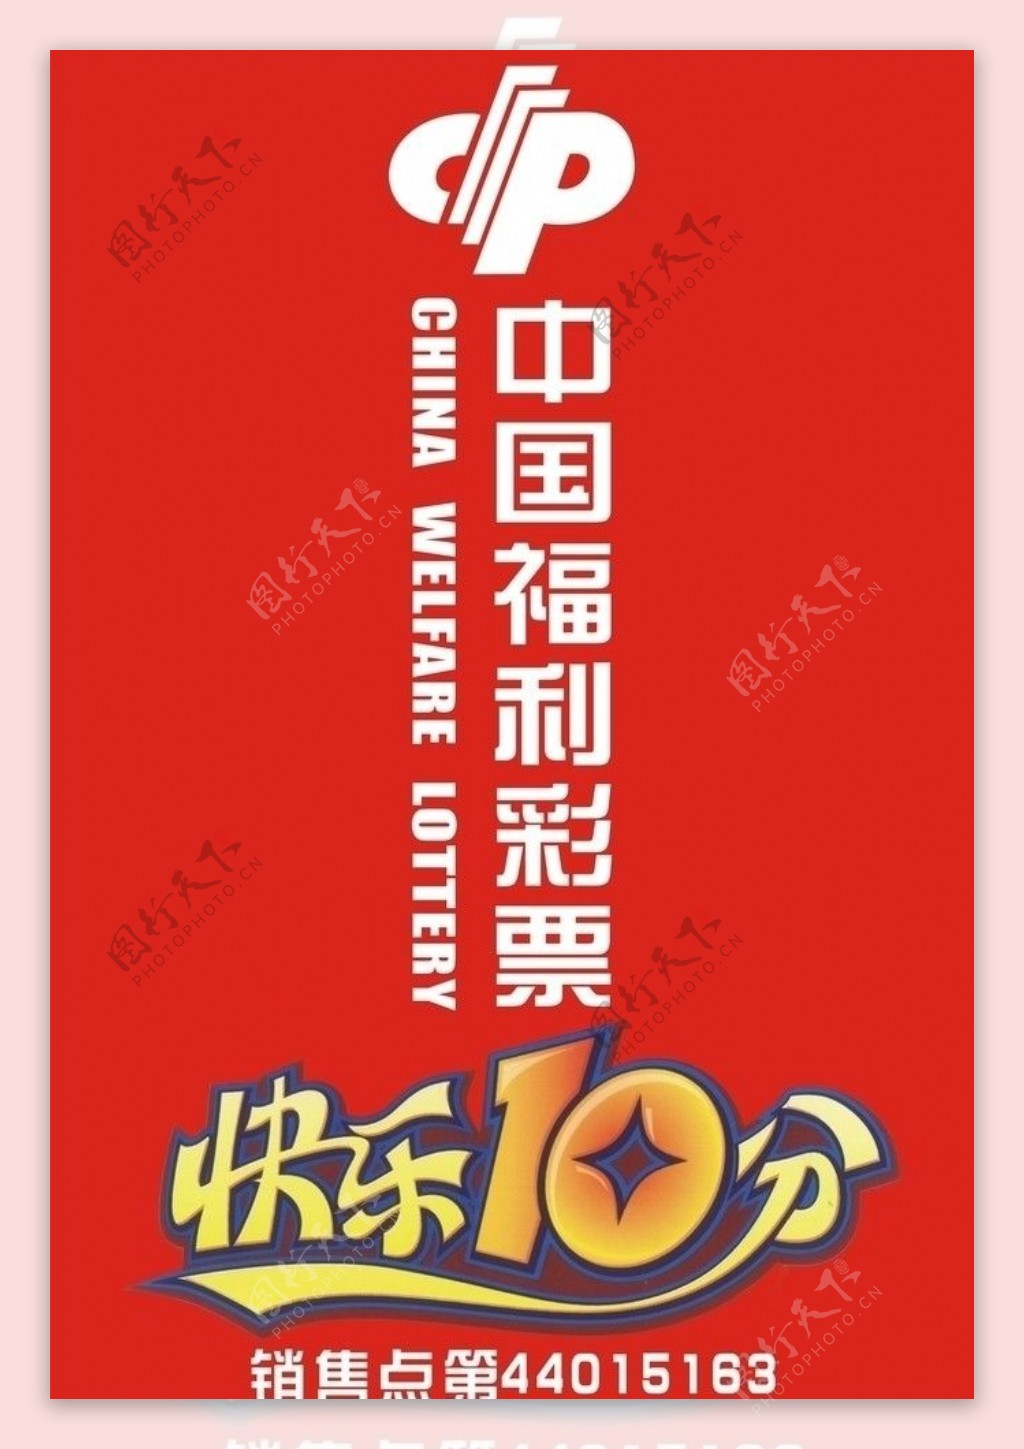 中国福利彩票图片